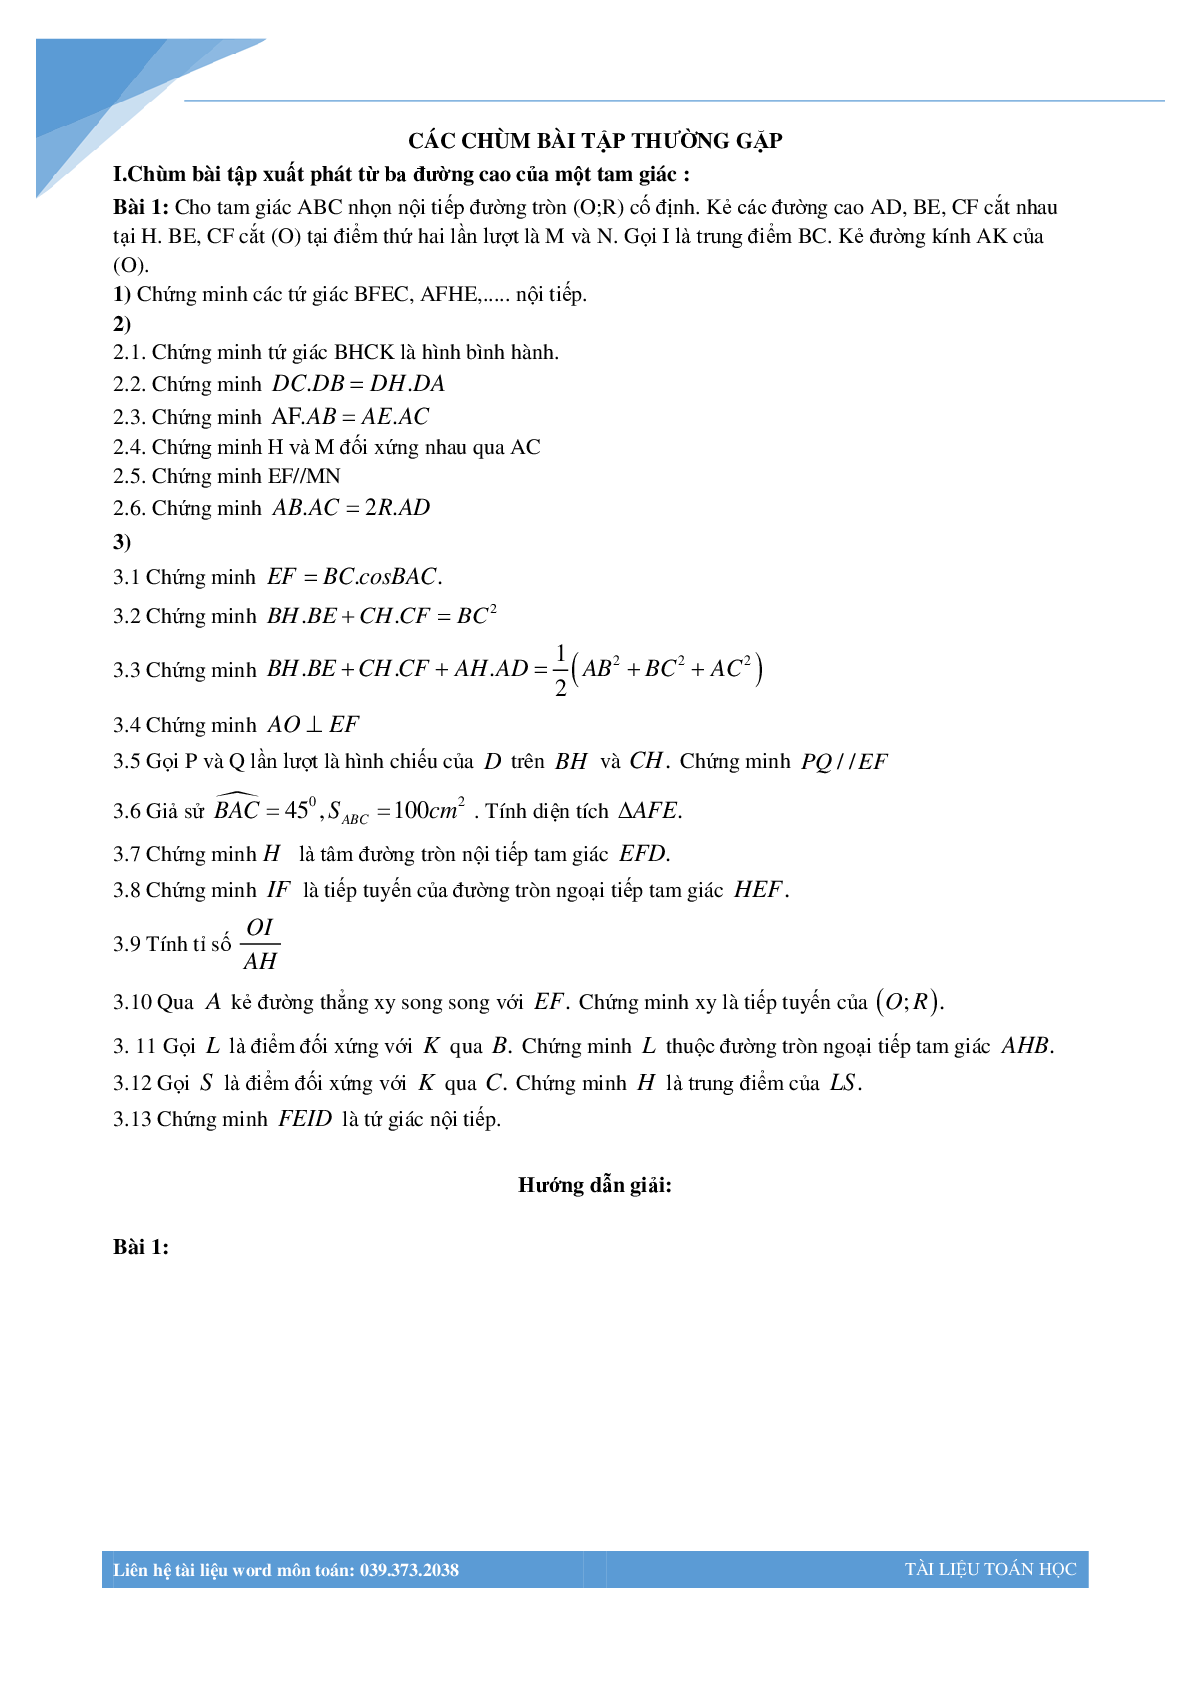 Chùm bài toán hình học luyện thi vào lớp 10 (trang 1)